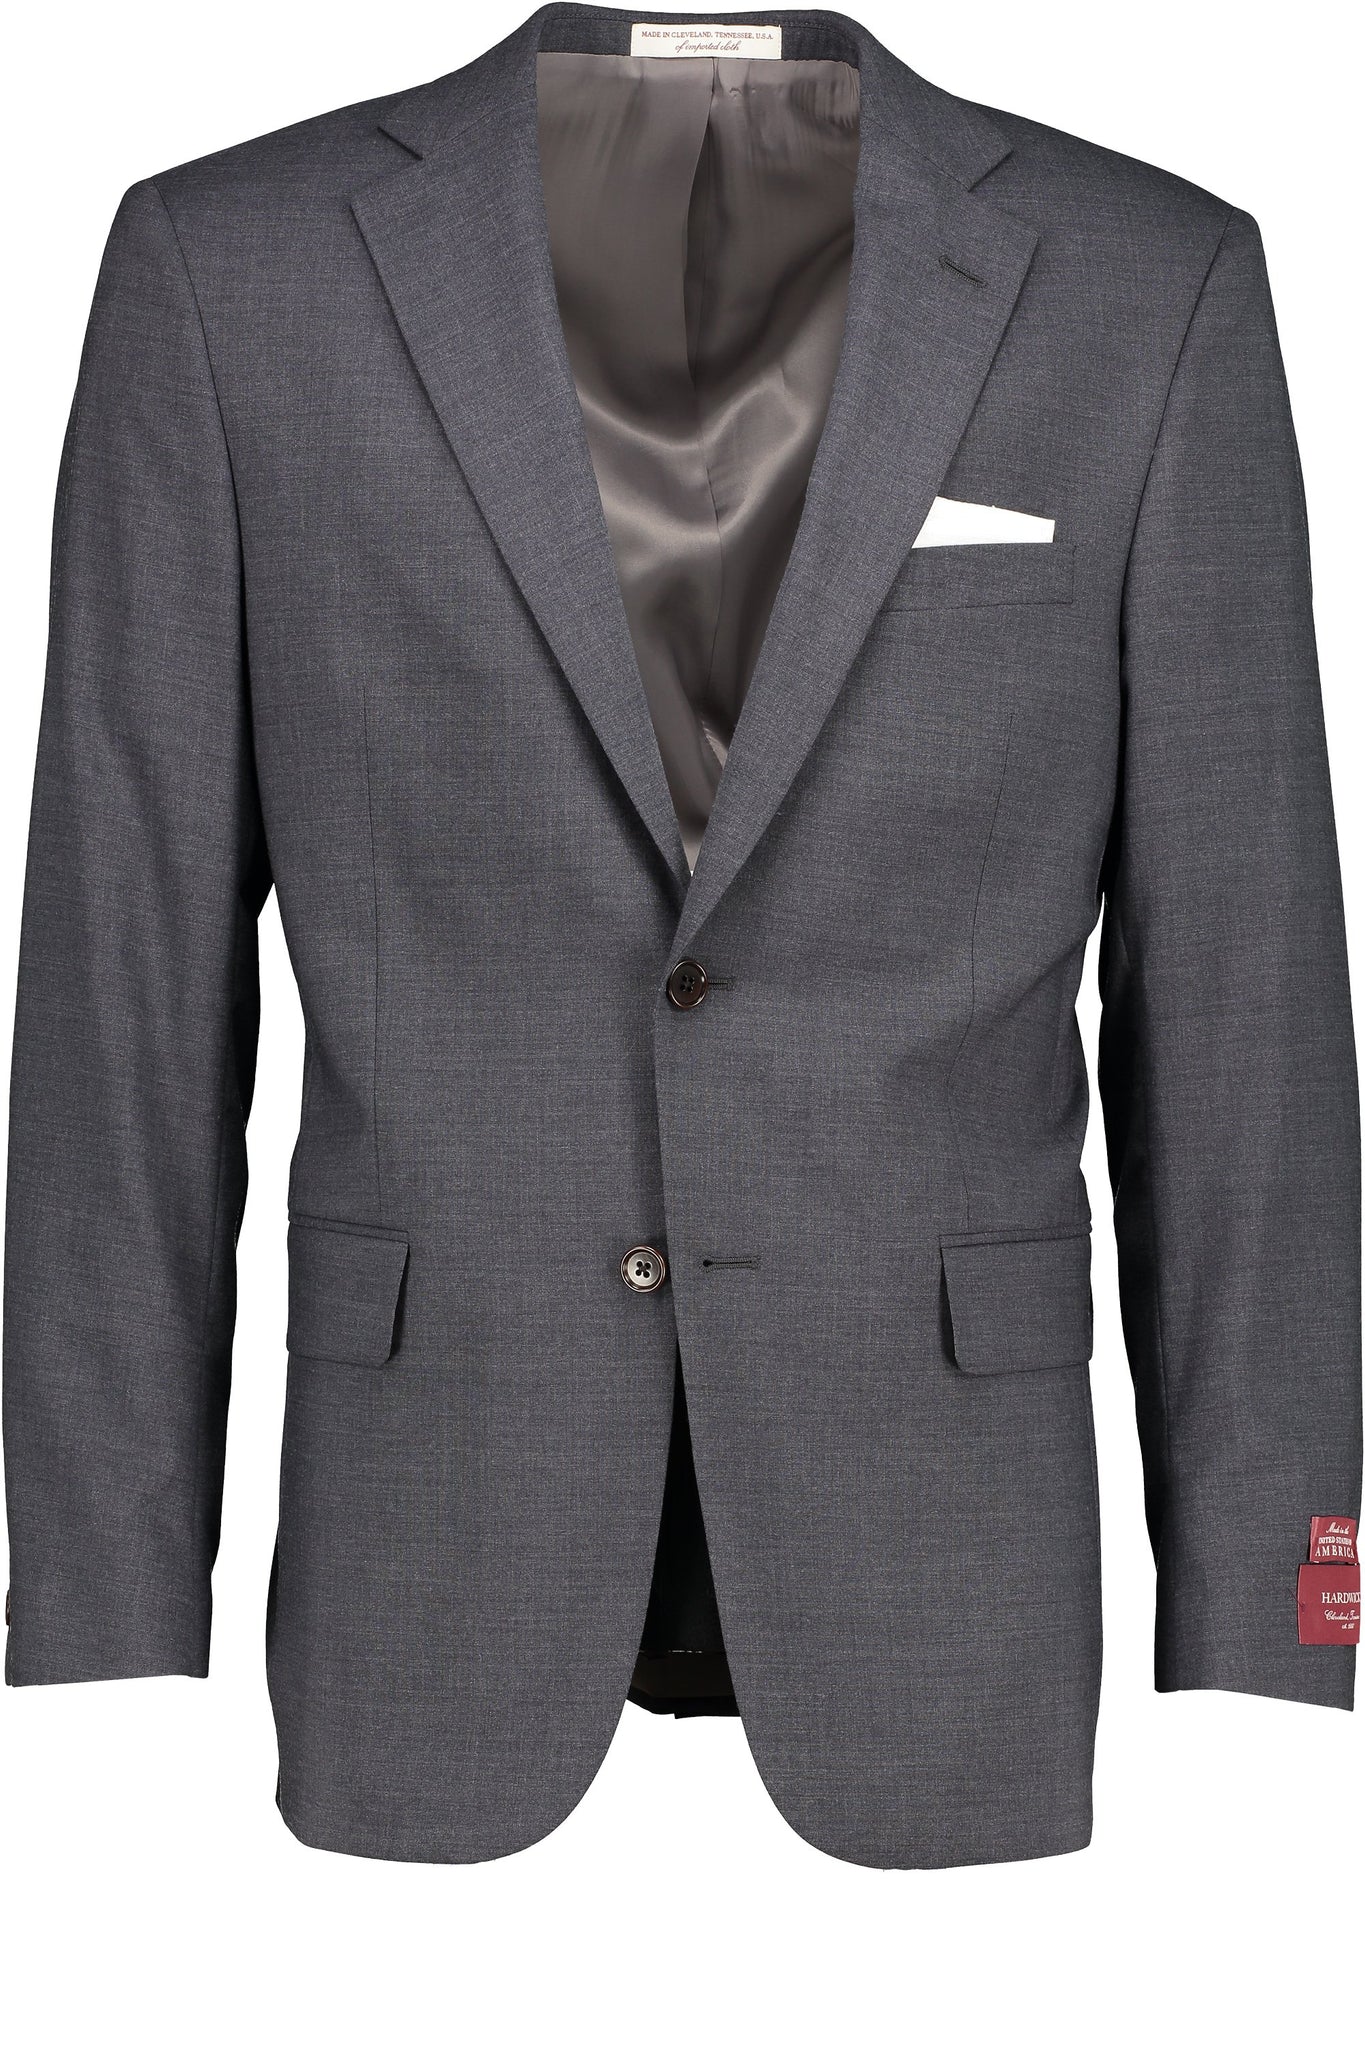 Classic Fit Grey H-Tech Wool SS Jacket - Big & Tall -  Hardwick.com